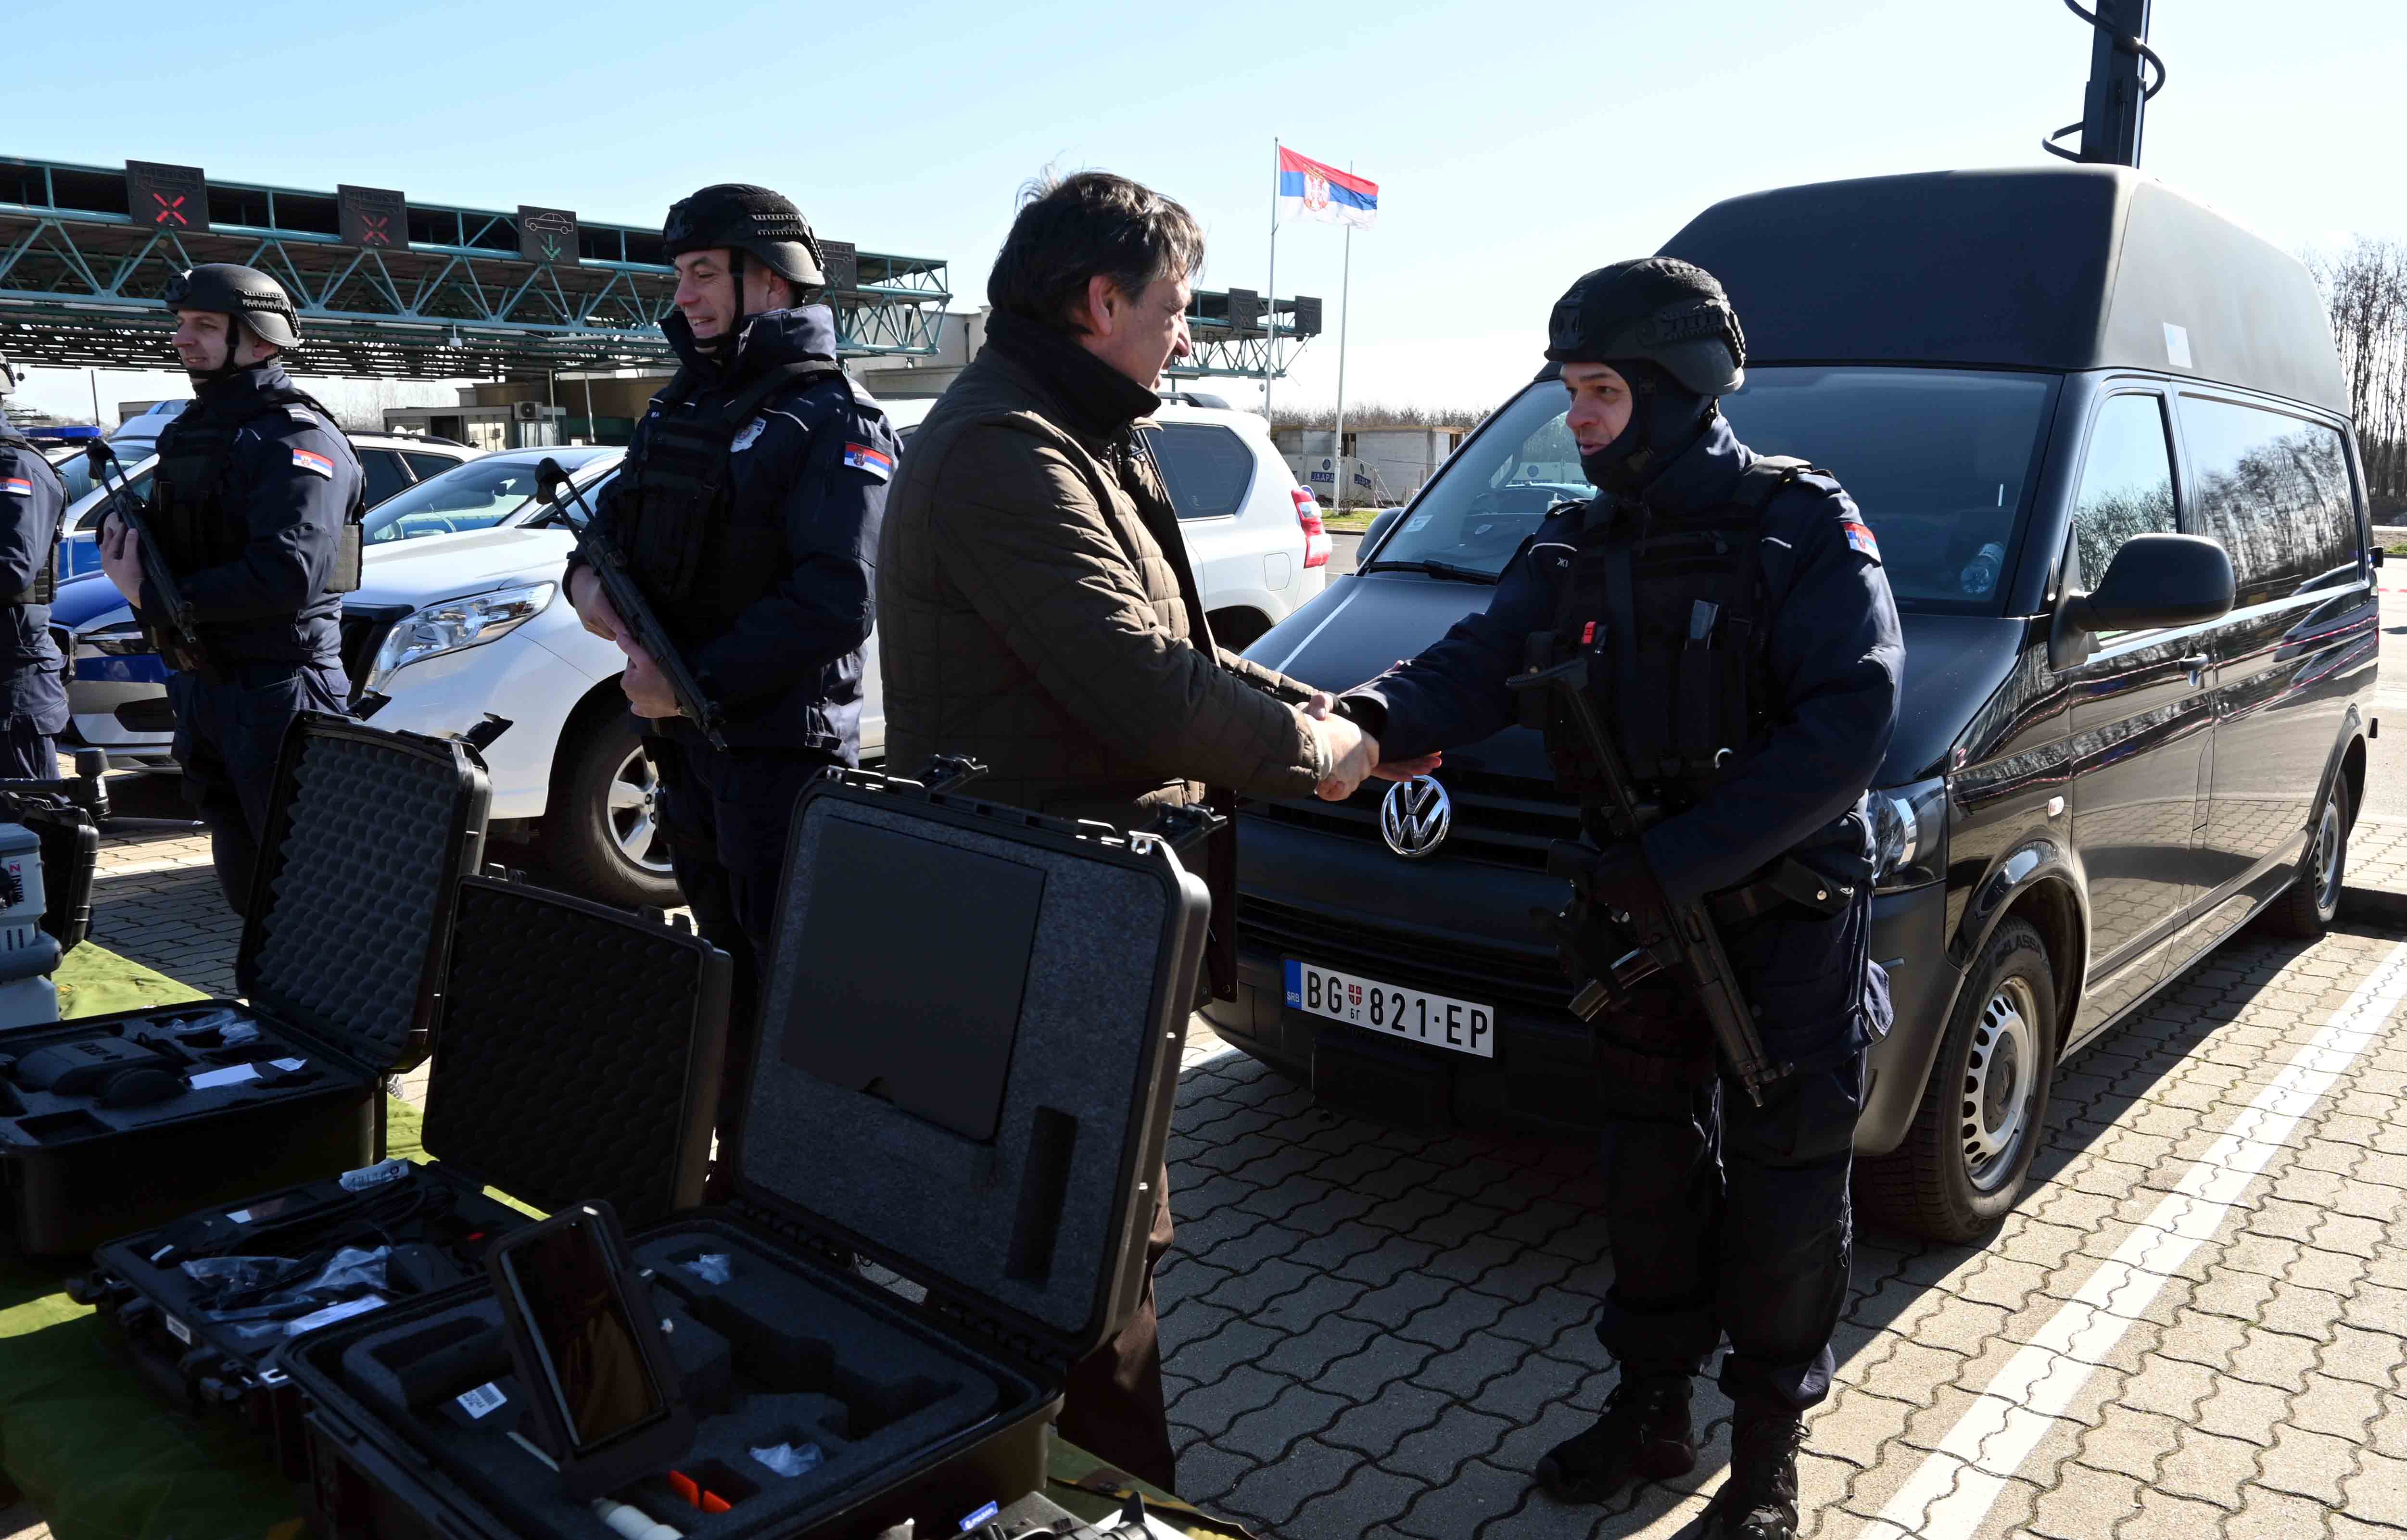 Republika Srbija pokazala da je pouzdan partner u suzbijanju ilegalnih migracija i borbi protiv prekograničnog kriminala